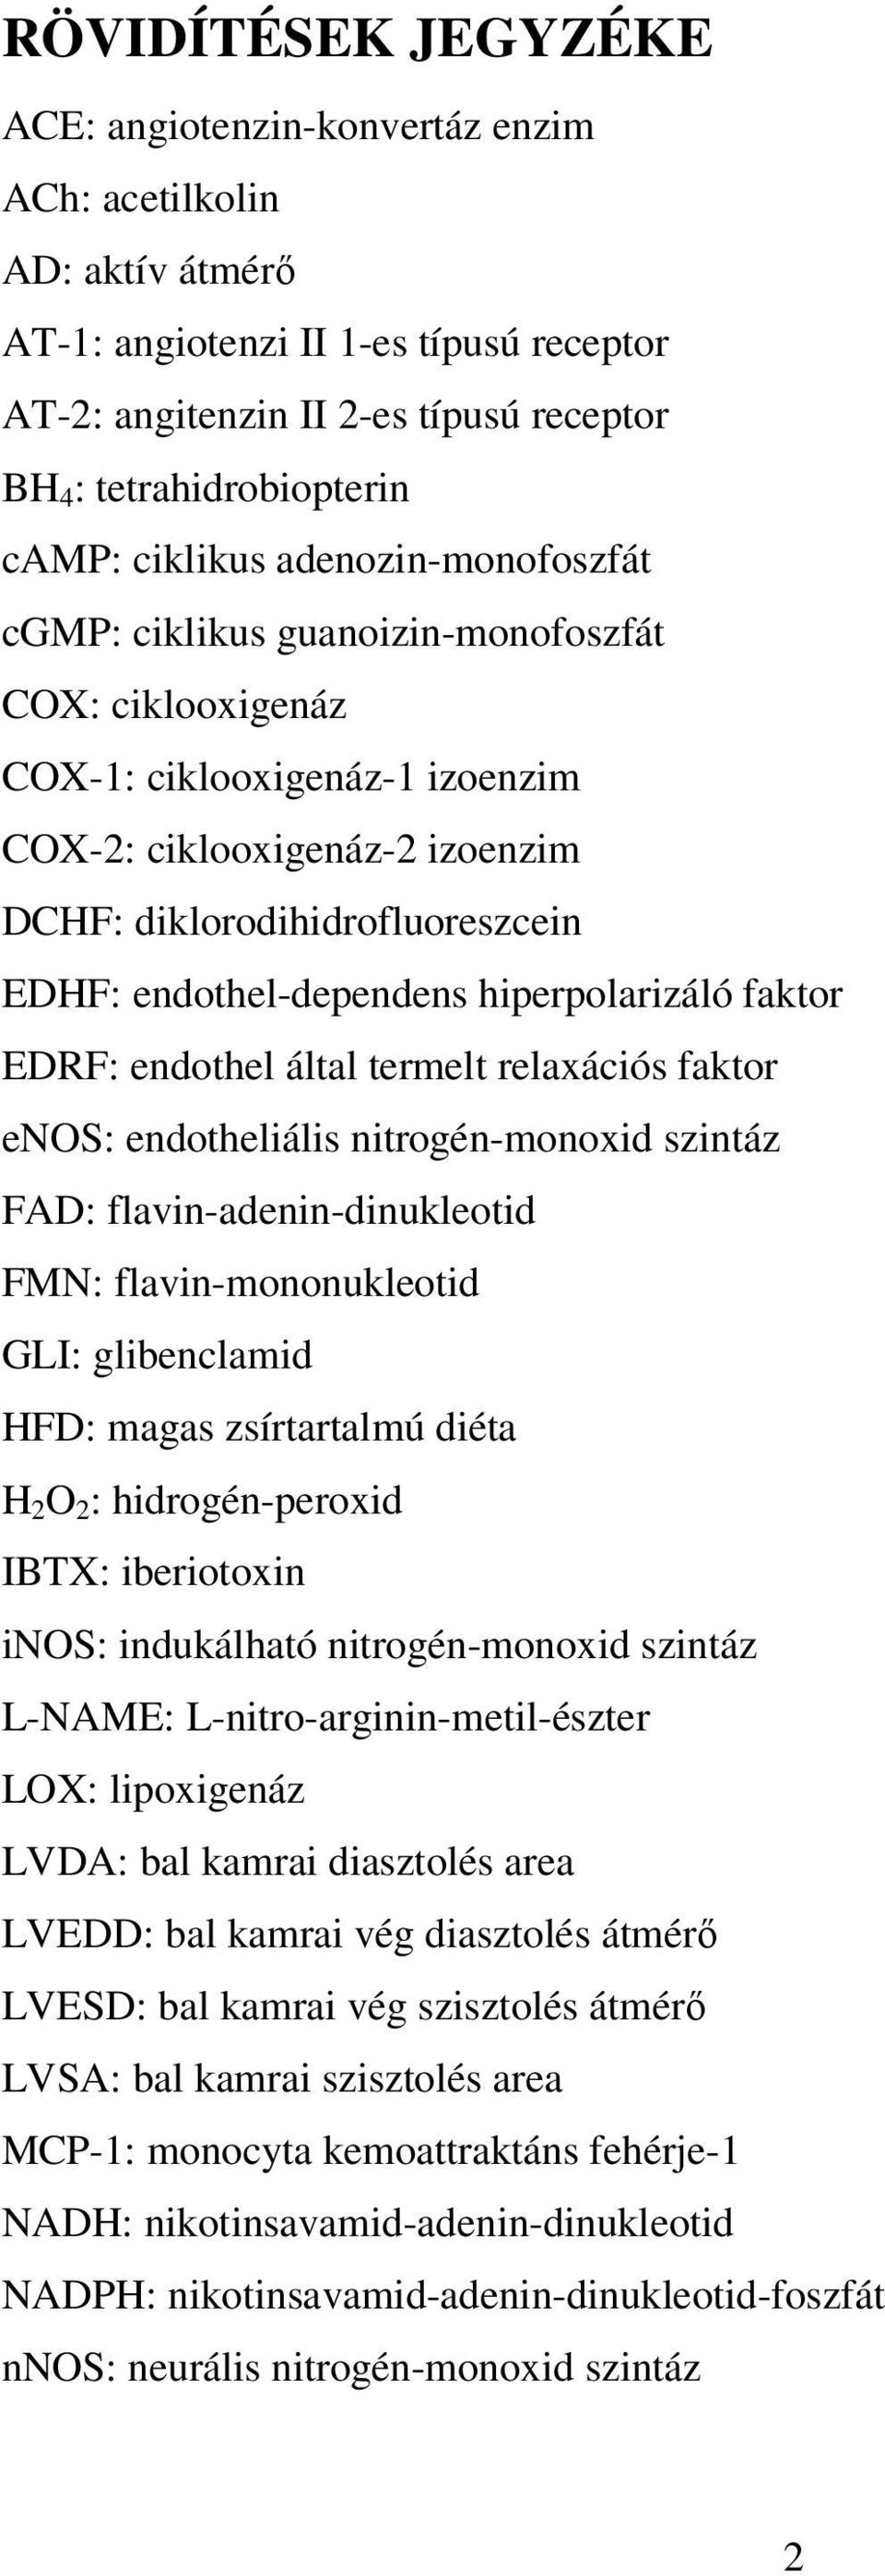 endothel-dependens hiperpolarizáló faktor EDRF: endothel által termelt relaxációs faktor enos: endotheliális nitrogén-monoxid szintáz FAD: flavin-adenin-dinukleotid FMN: flavin-mononukleotid GLI: